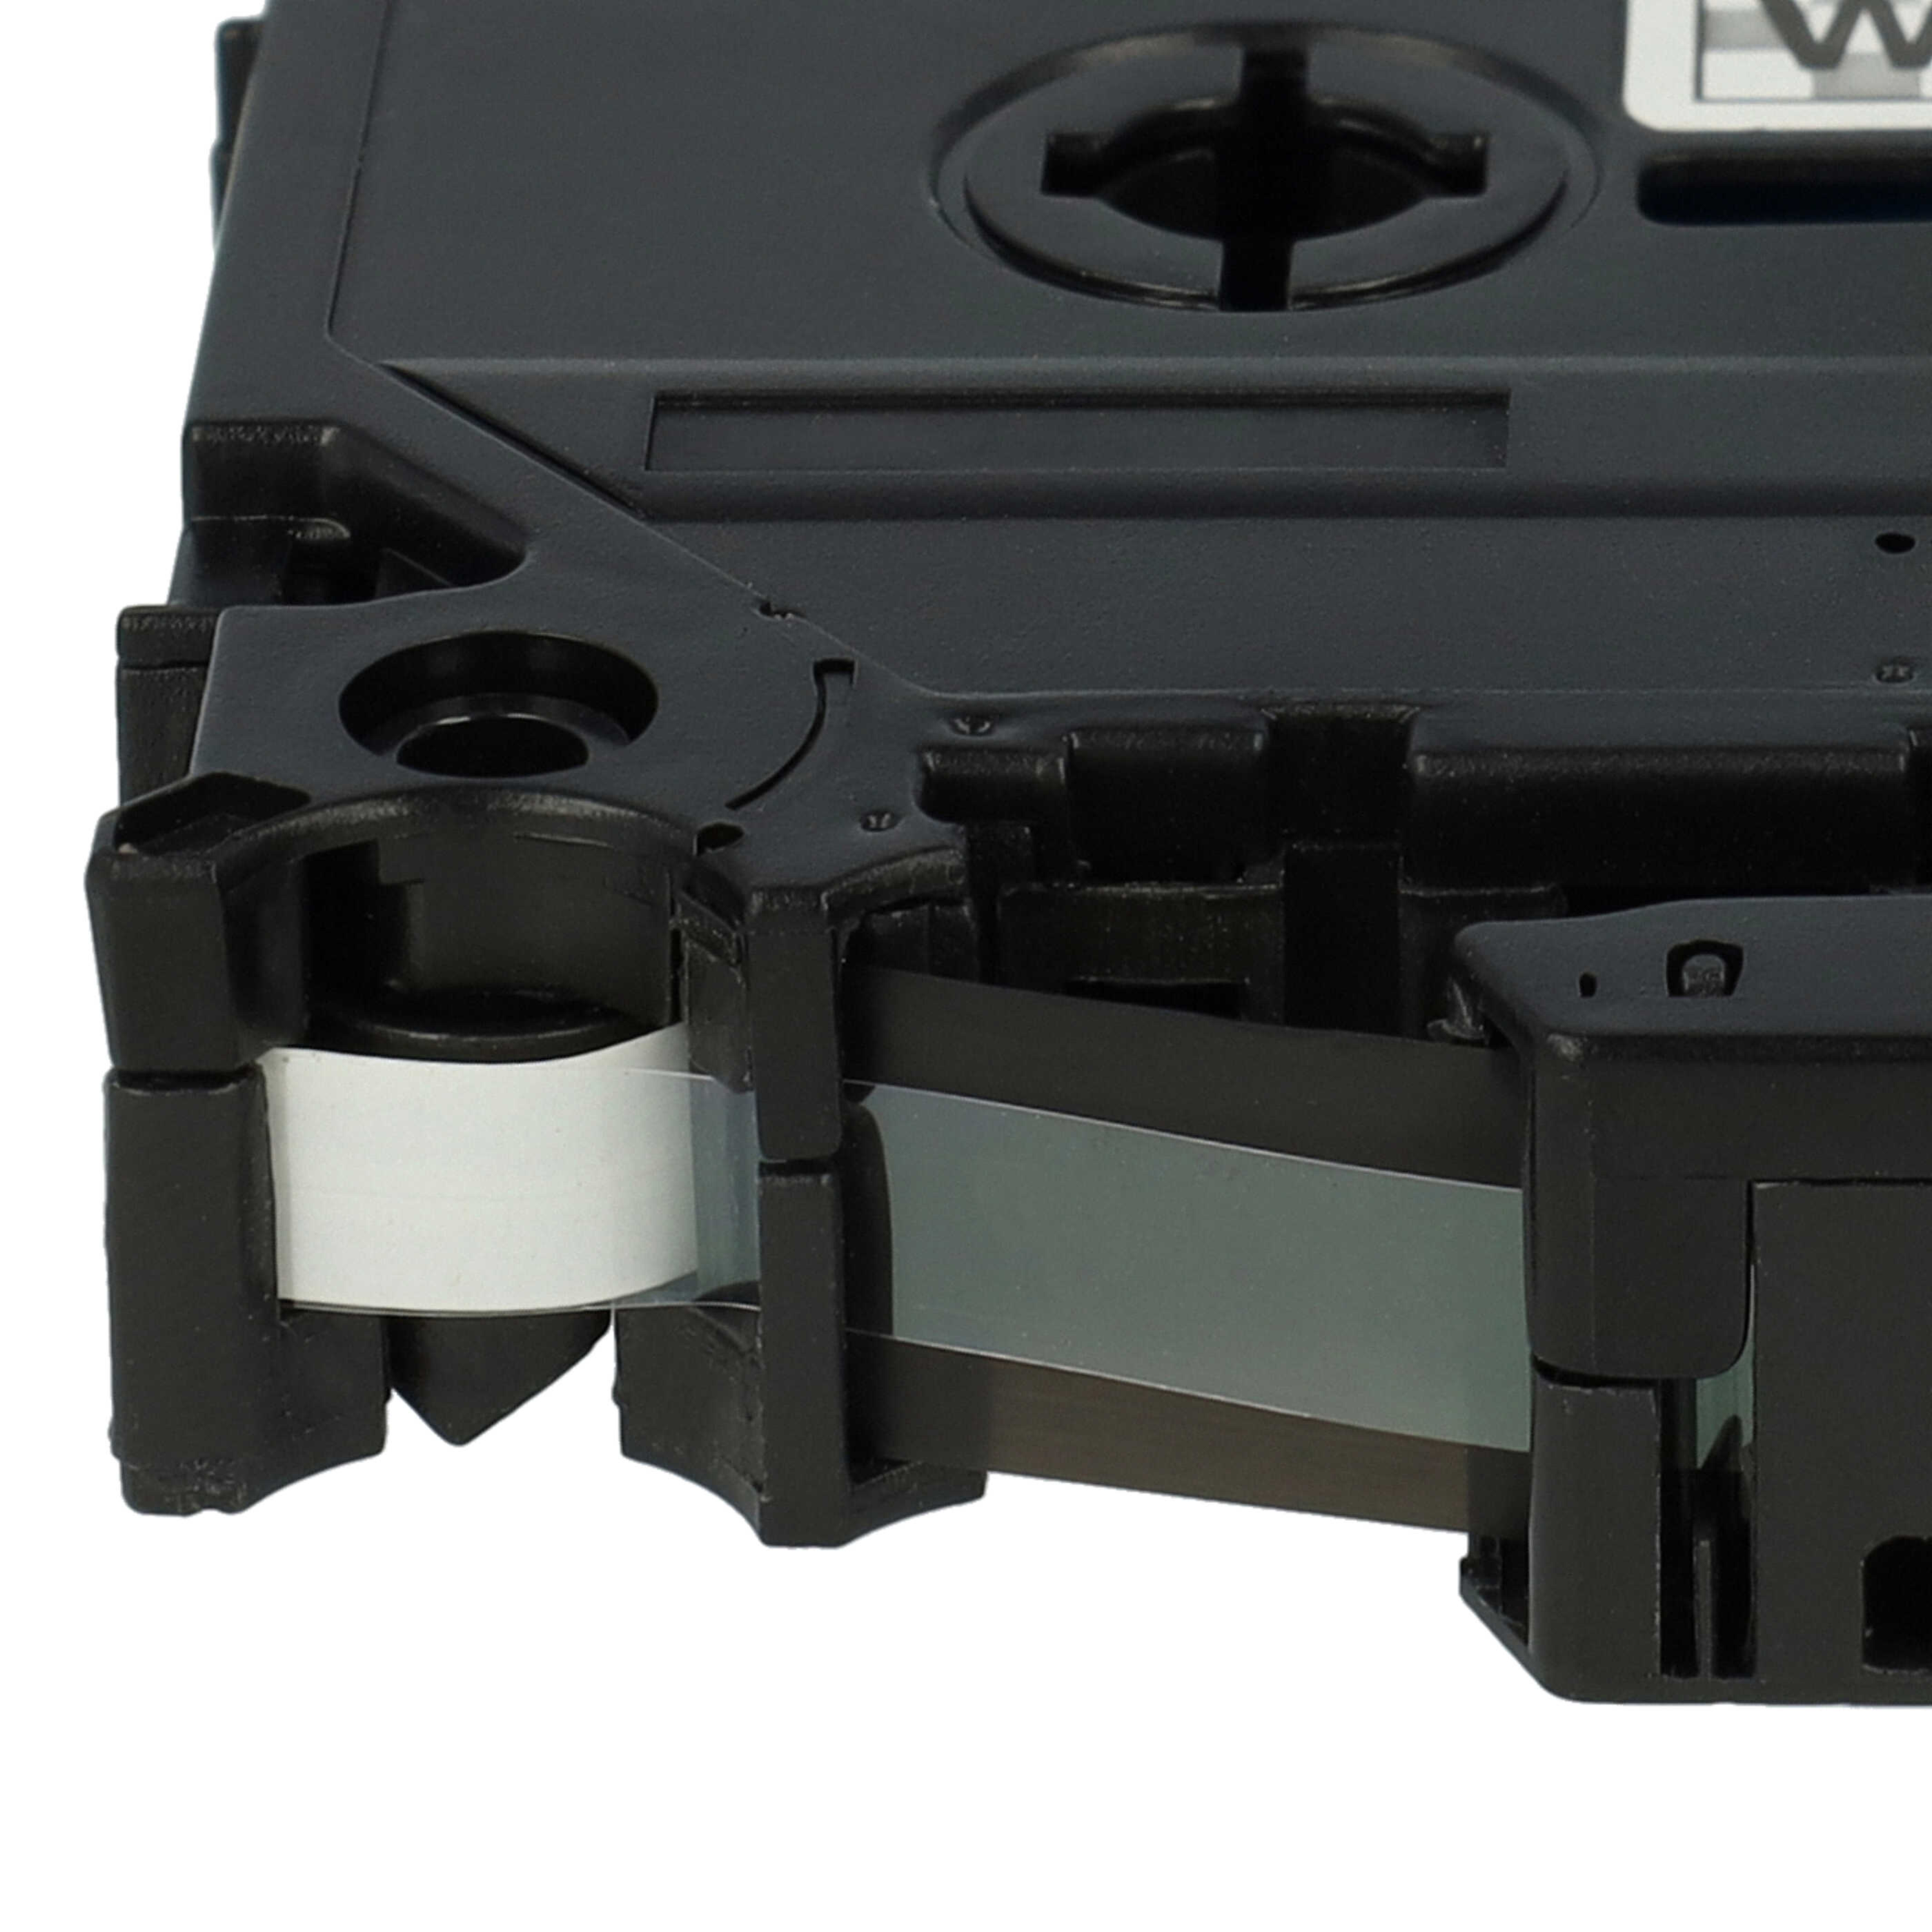 Cassette à ruban remplace Brother TZ-SE1, TZE-SE1 - 6mm lettrage Noir ruban Blanc